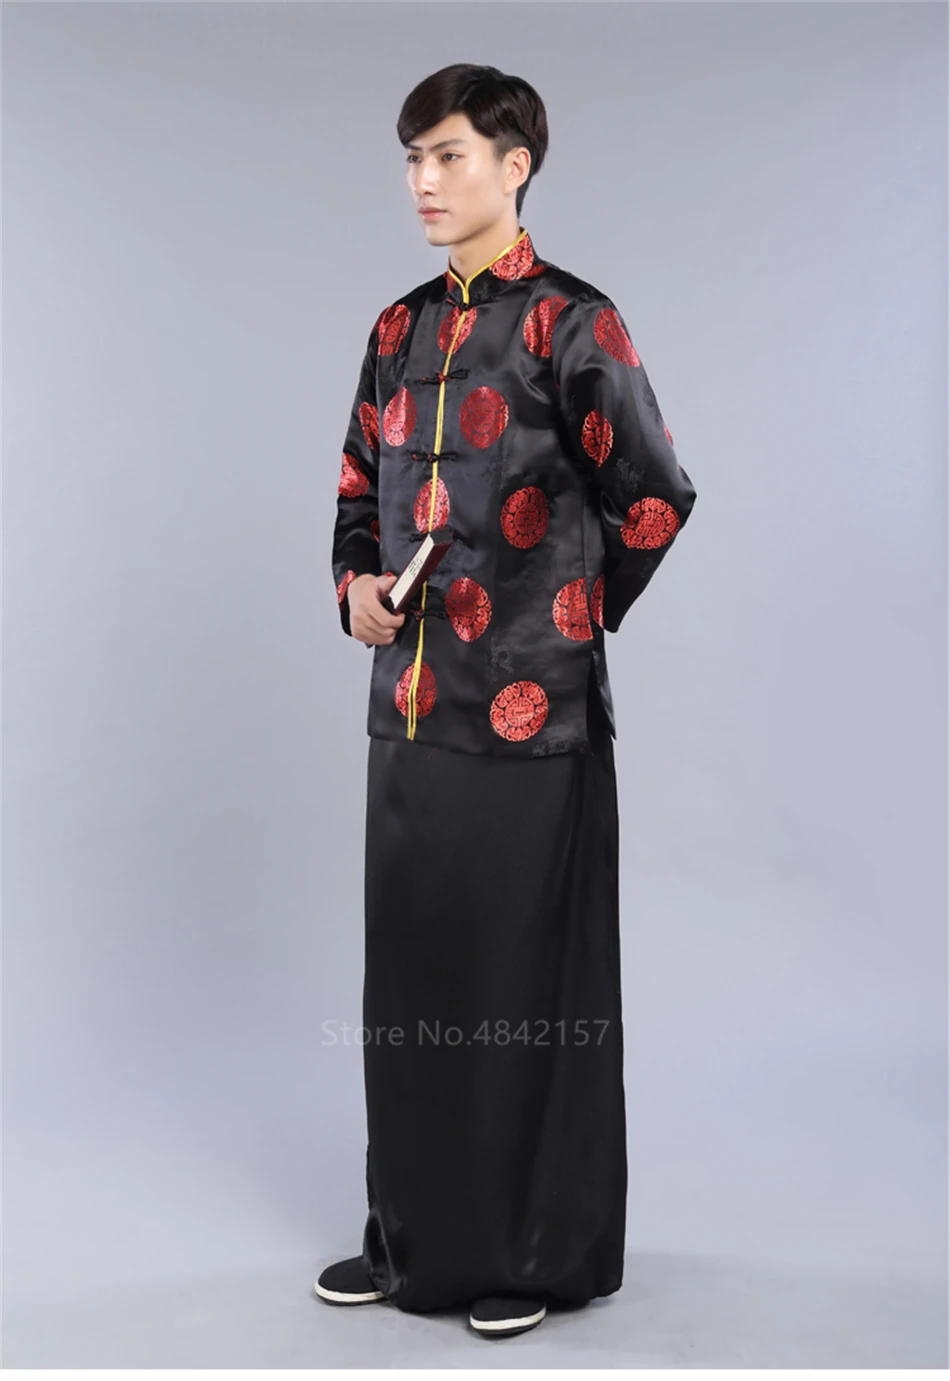 Традиционный китайский винтажный костюм из атласа, древний костюм, новогодний костюм Тан, костюм с вышивкой, униформа кунг-фу для мужчин, Hanfu